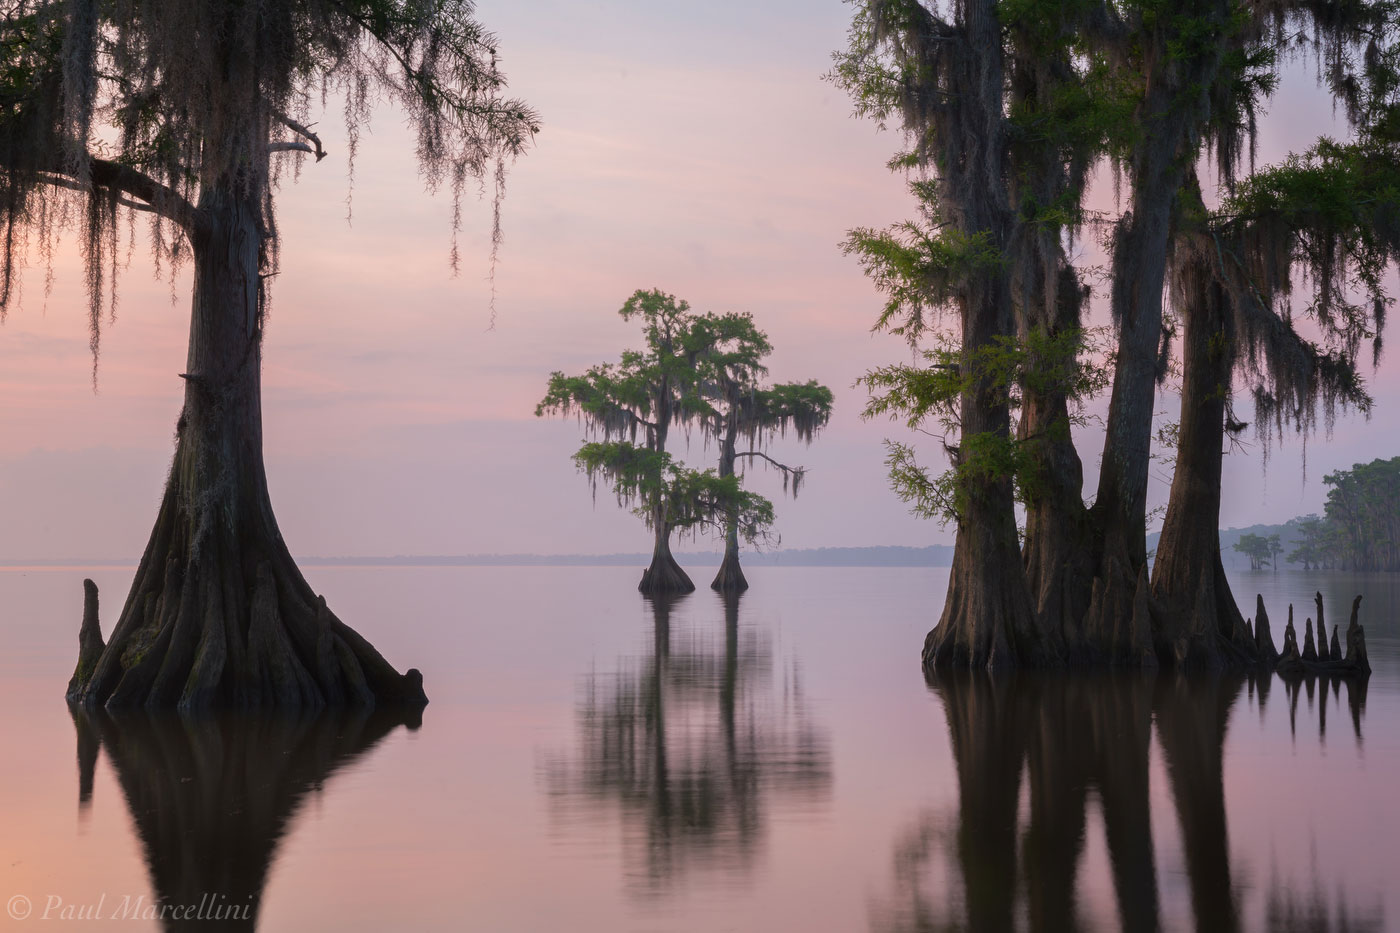 Surnise on Lake Maurepas, Louisiana